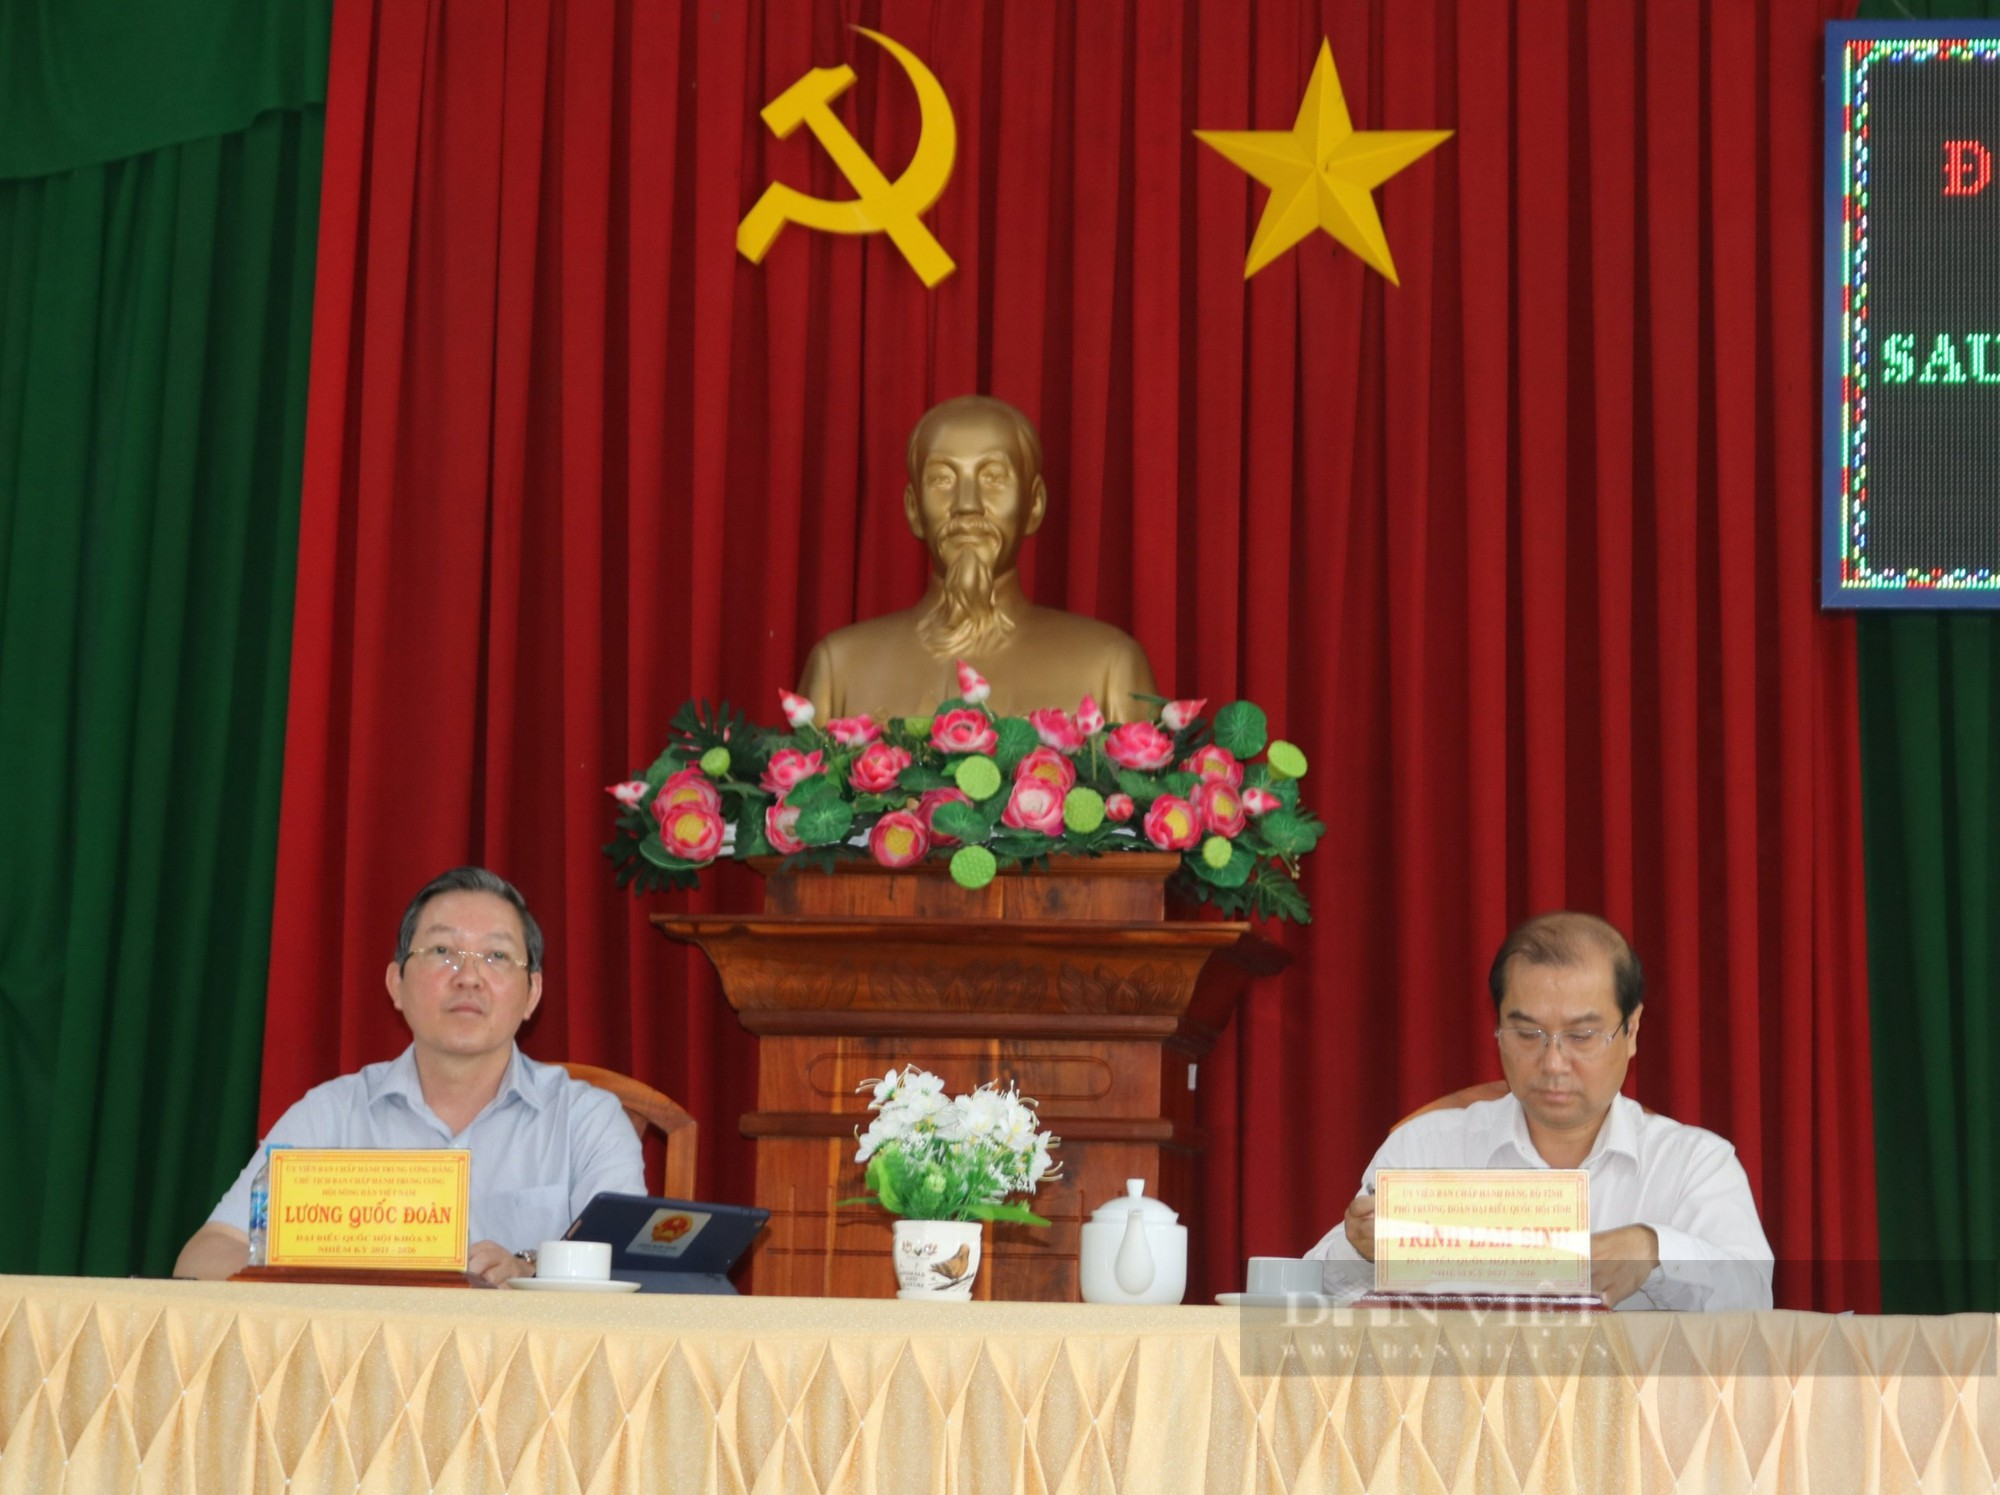 Chủ tịch Hội NDVN và đoàn ĐBQH tỉnh An Giang tiếp xúc cử tri sau Kỳ họp thứ năm tại huyện Chợ Mới - Ảnh 1.